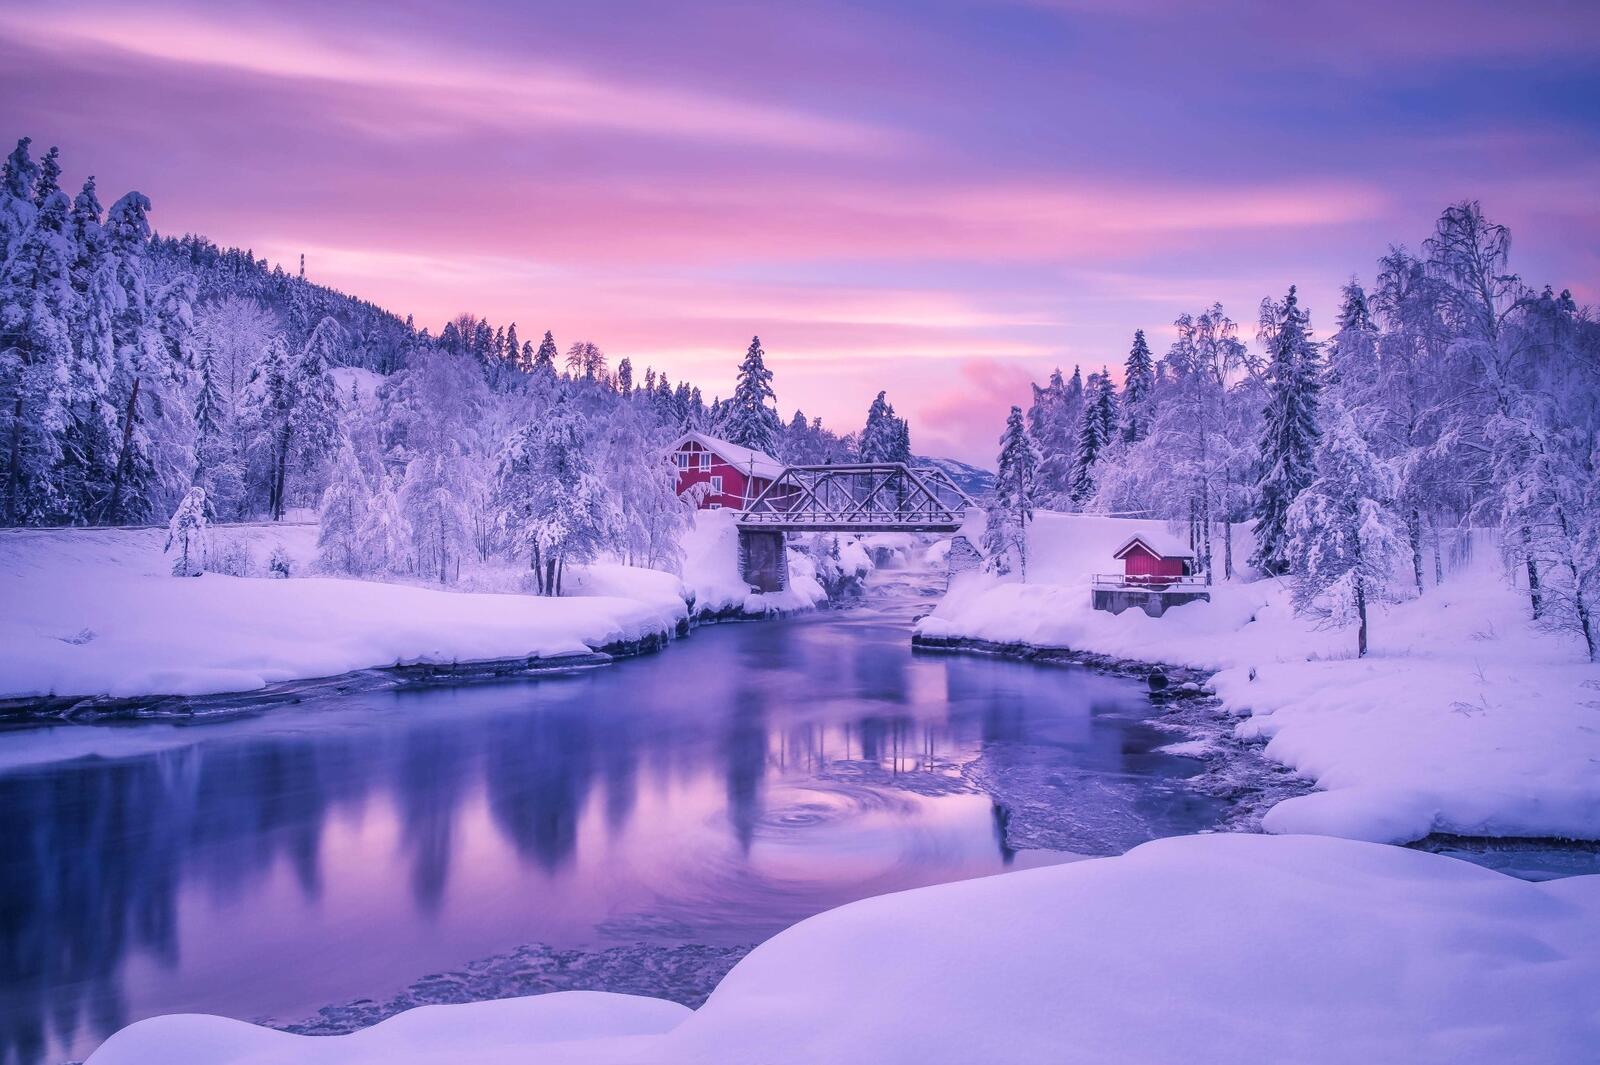 Обои Skien Norway зима на рабочий стол